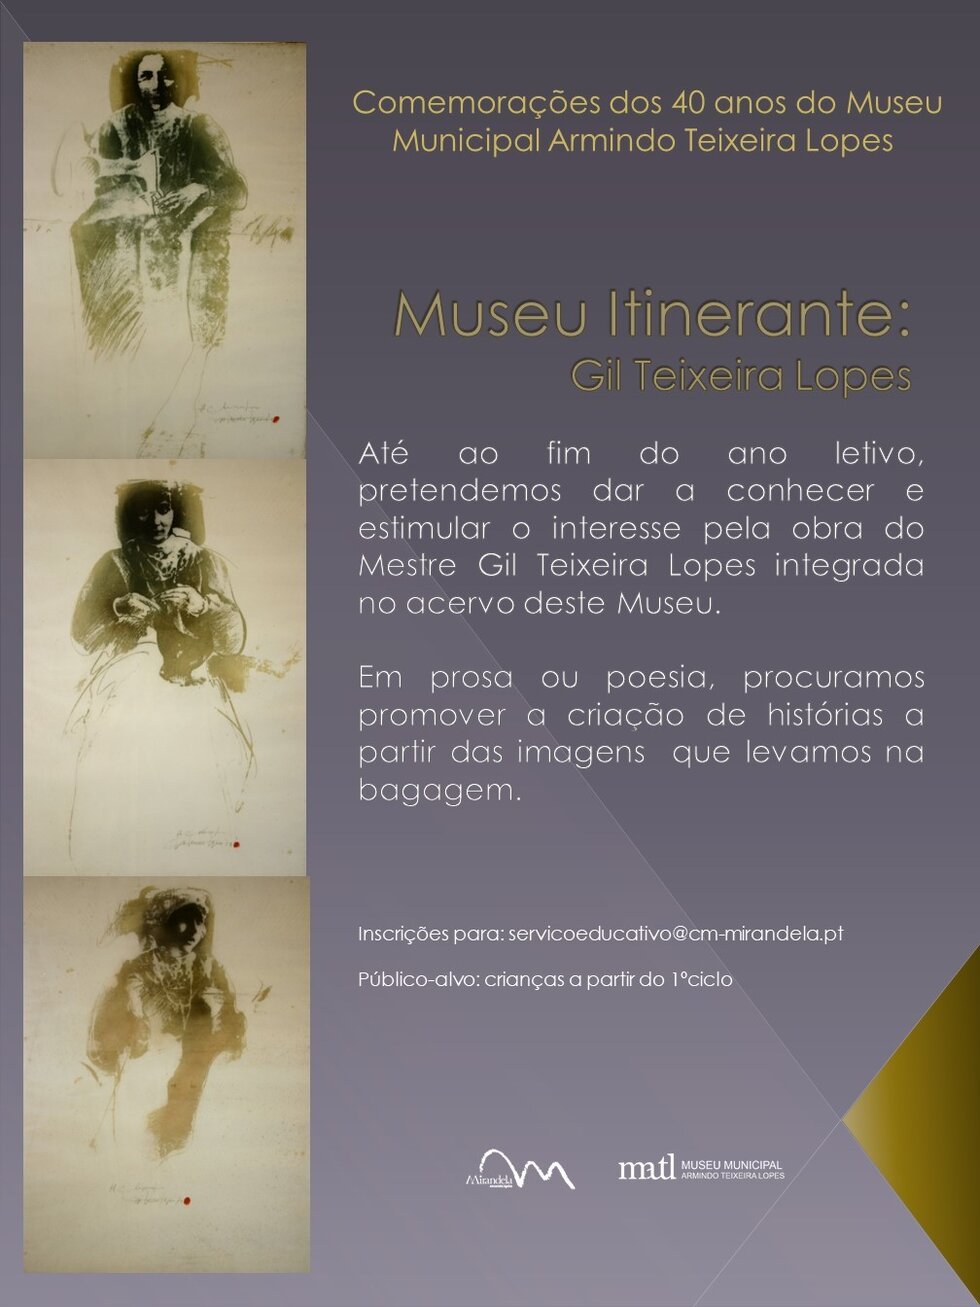 gil_teixeira_lopes___itinerancias_do_museu